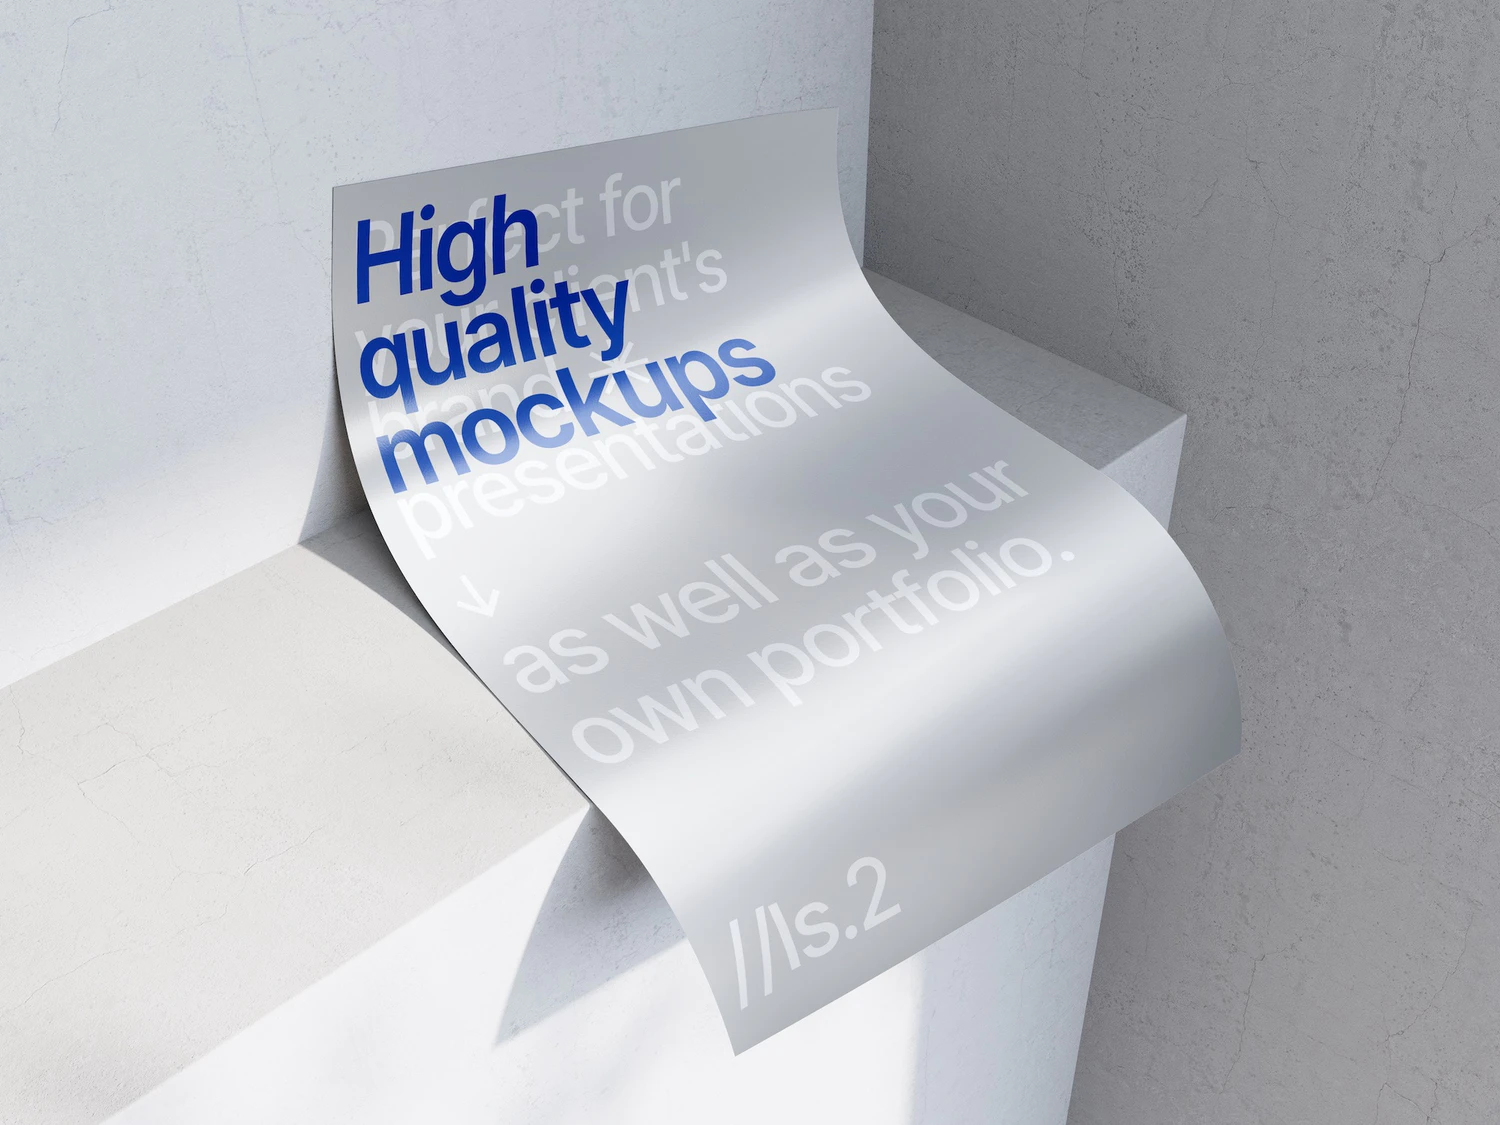 4620 21款高级极简金属纸张质感扭曲单页海报设计作品贴图PS样机素材展示效果模板套装Metallic_Paper_Mockups@GOOODME.COM